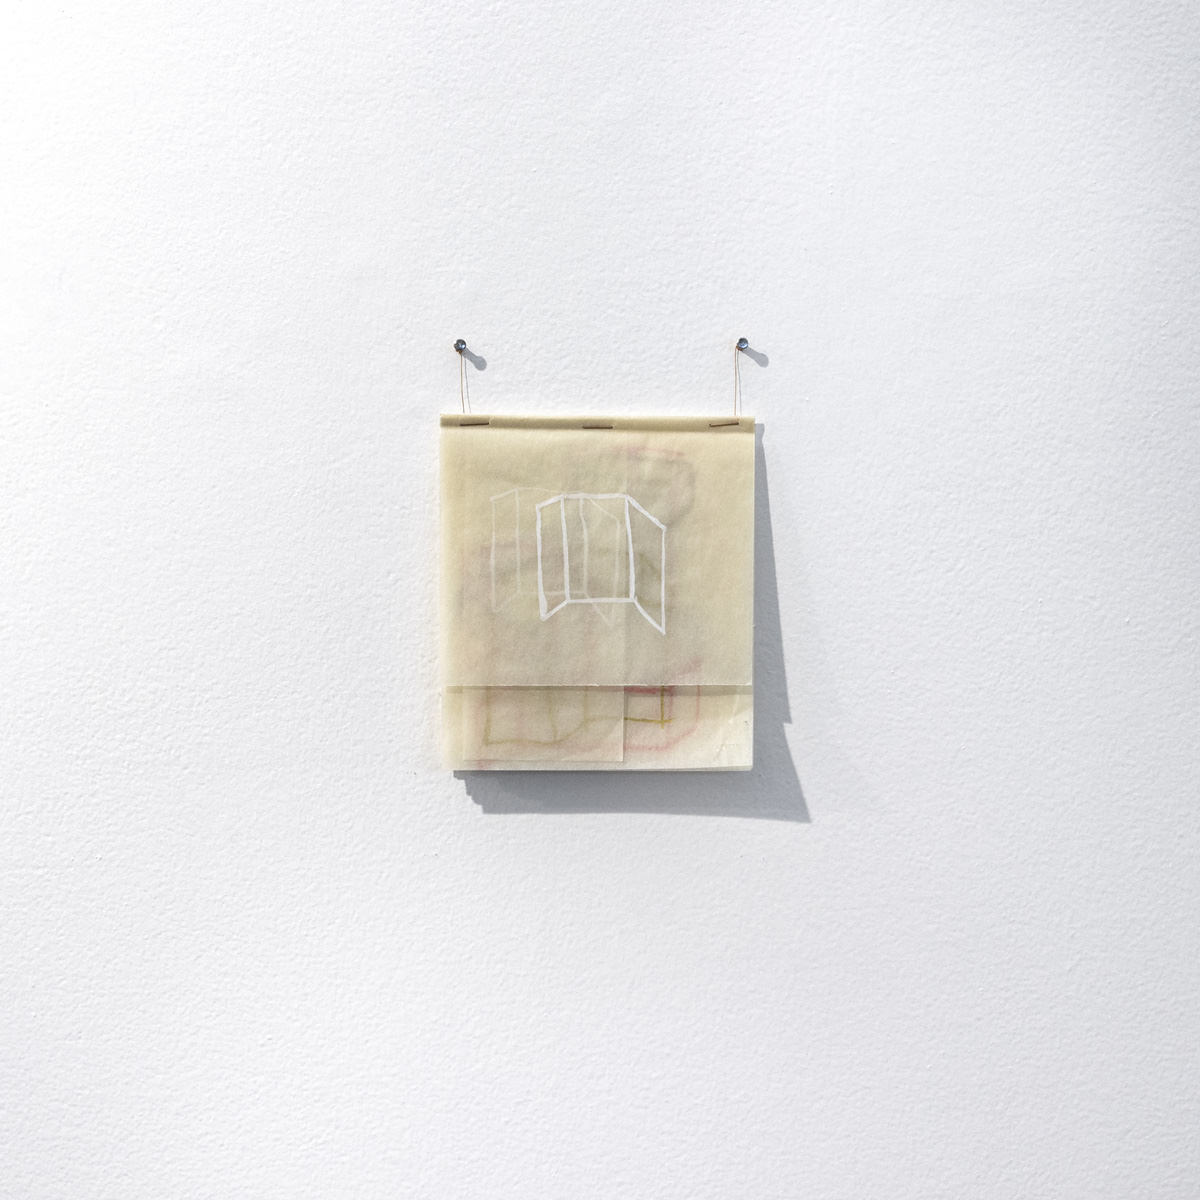 Flávia Ribeiro, Zeichnen, 2019 - Gouache und Bronzepulver auf einem doppelten Blatt Skizzenpapier - 28,7 x 21 cm. Fotos: Bekanntgabe.